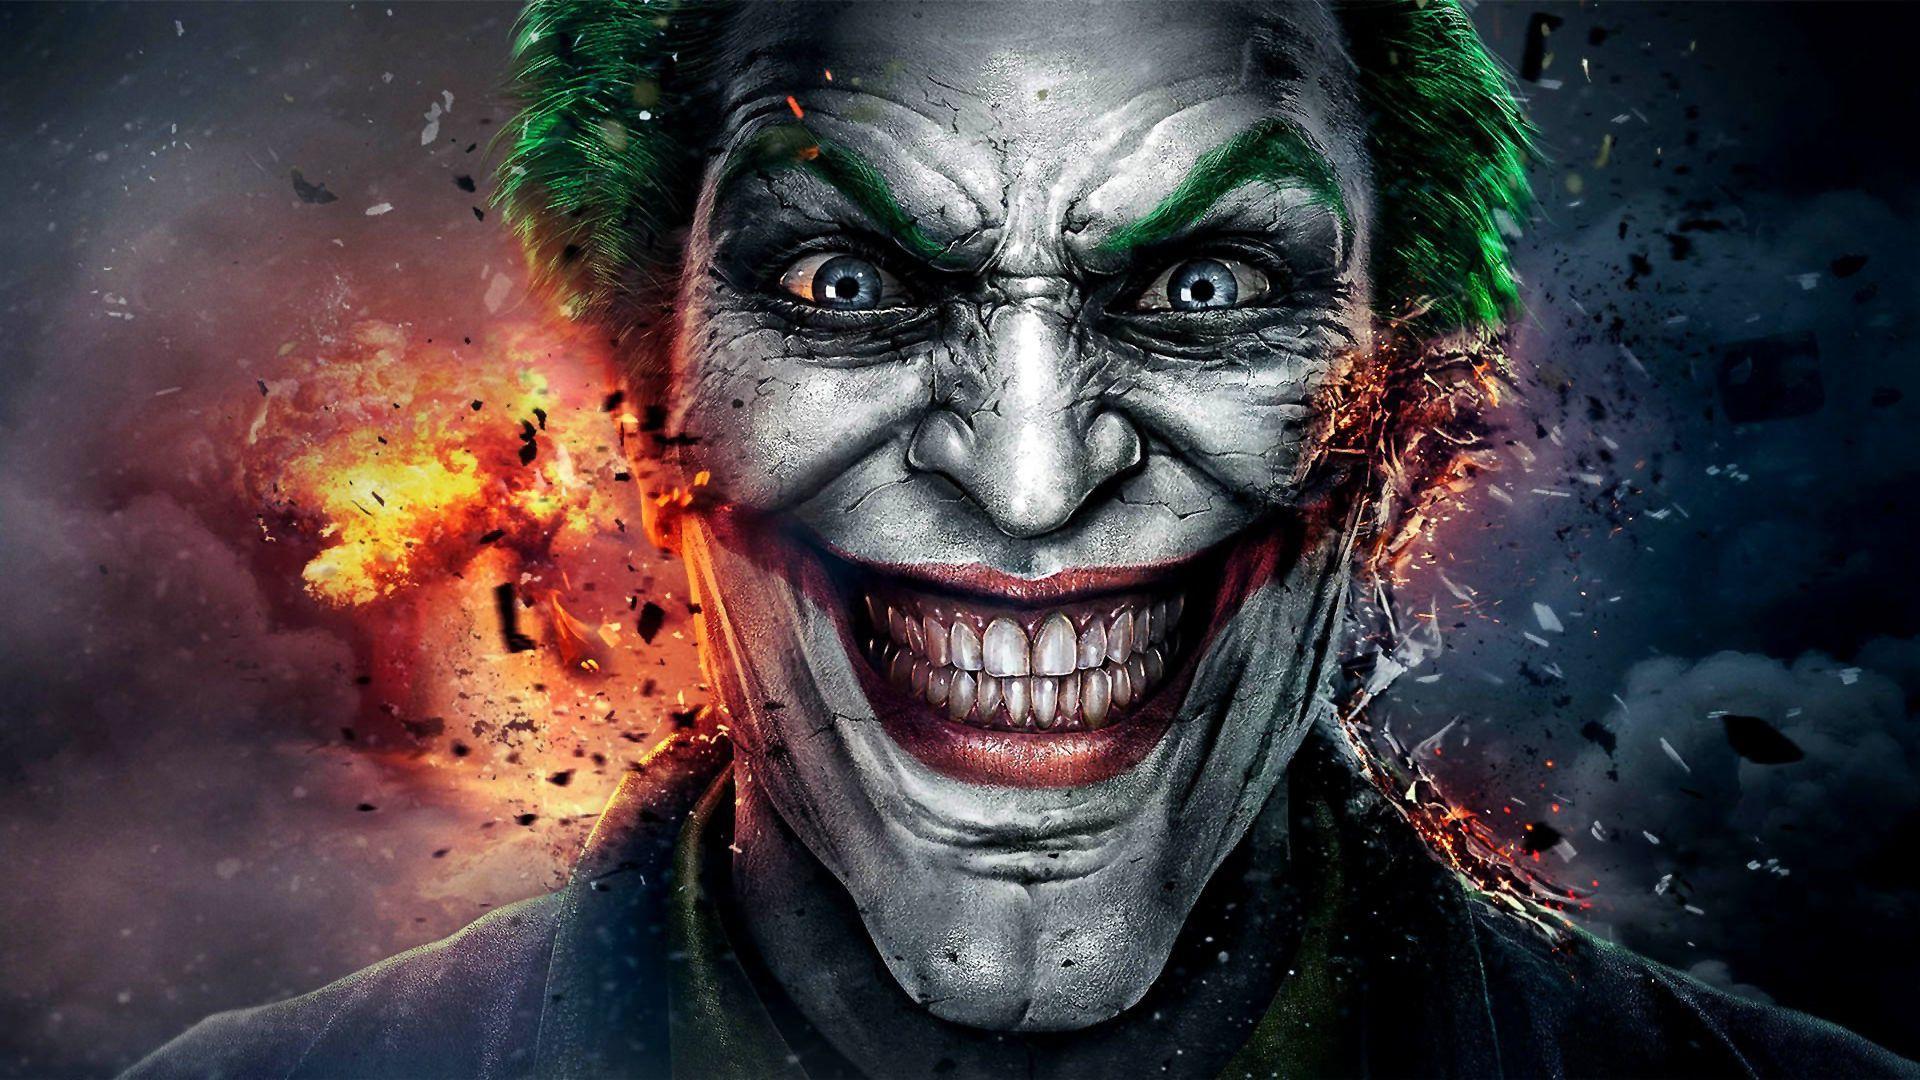 40 Gambar Download Wallpaper Hd Joker Suicide Squad terbaru 2020